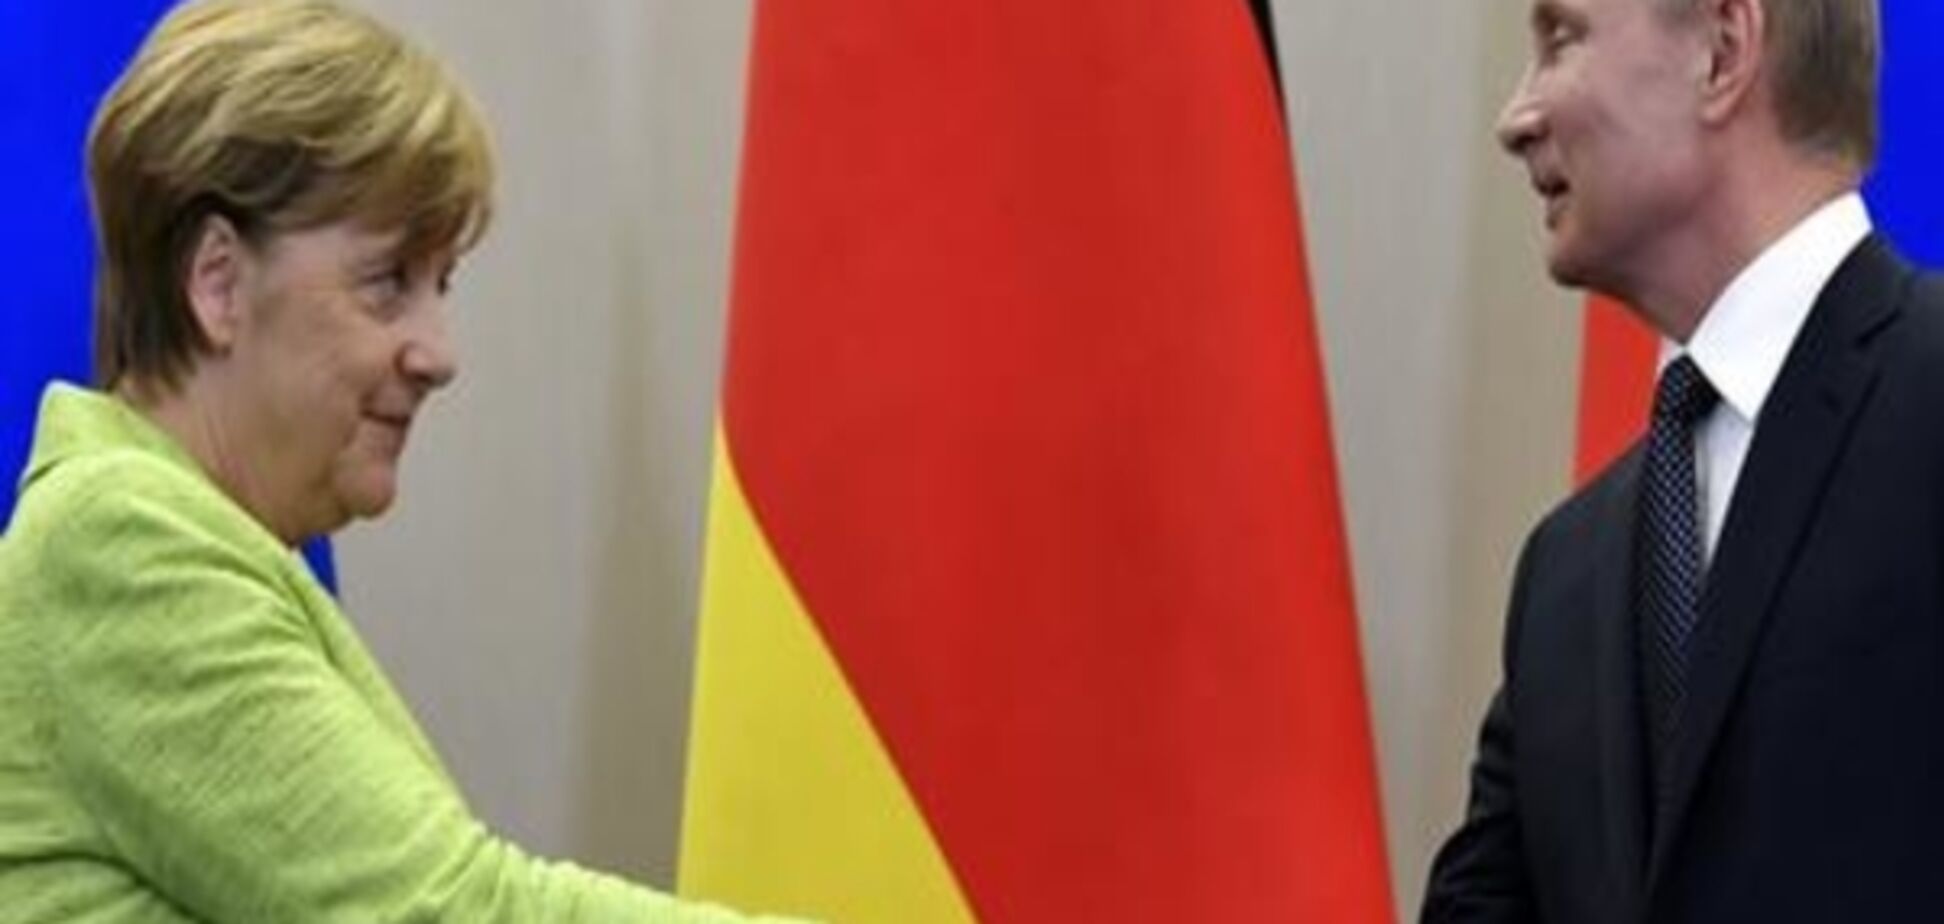 Коментар: Зустріч Меркель і Путіна у Сочі - жорстко, але без конфронтації